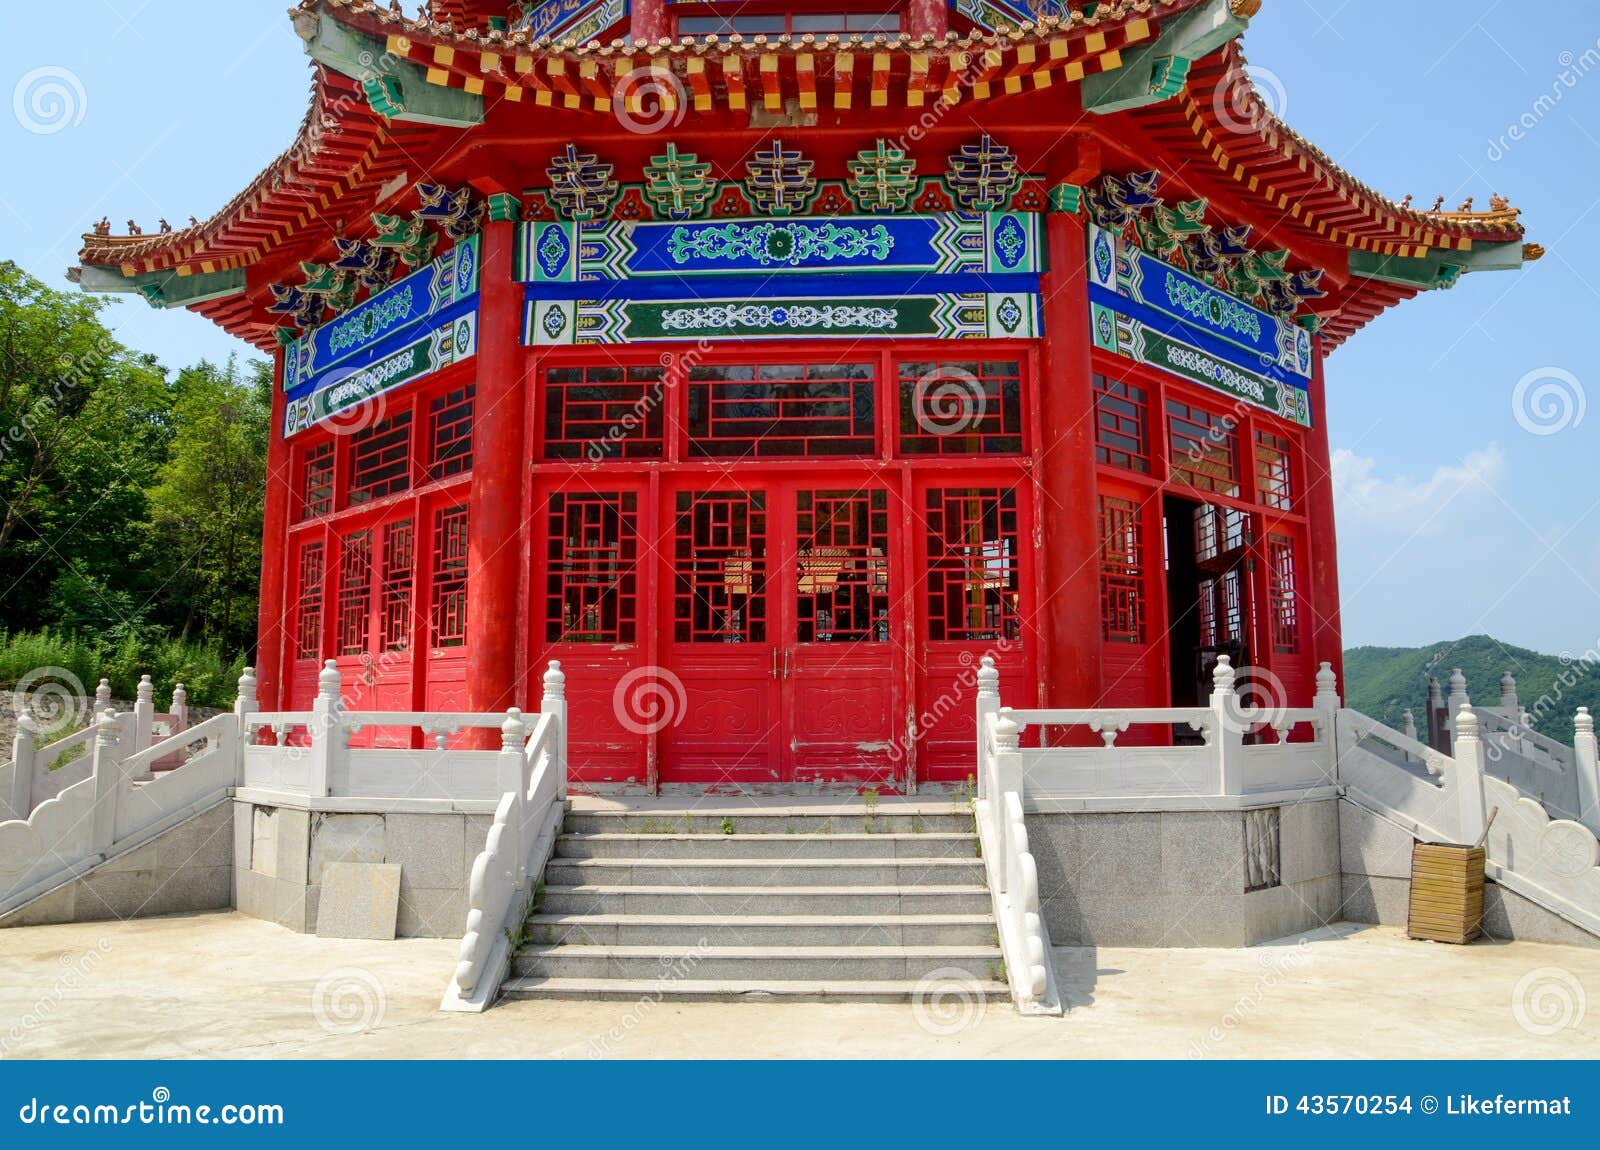 photo stock maison traditionnelle chinoise de lingot image